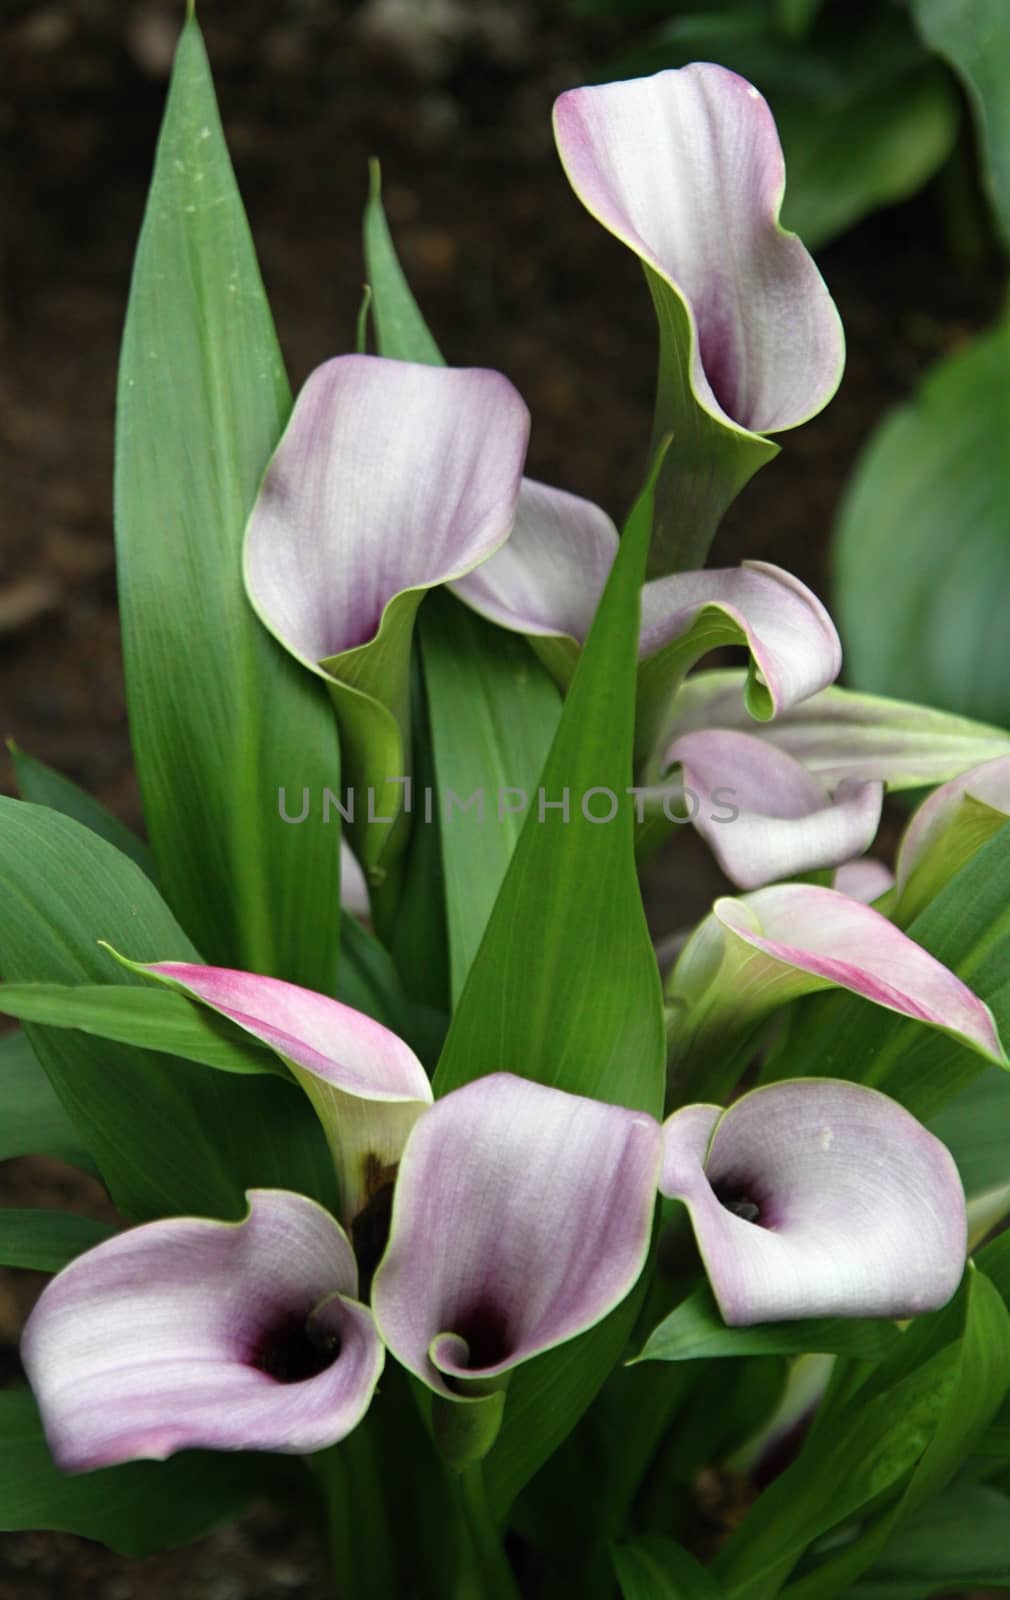 Violet calla lilies  by jnerad